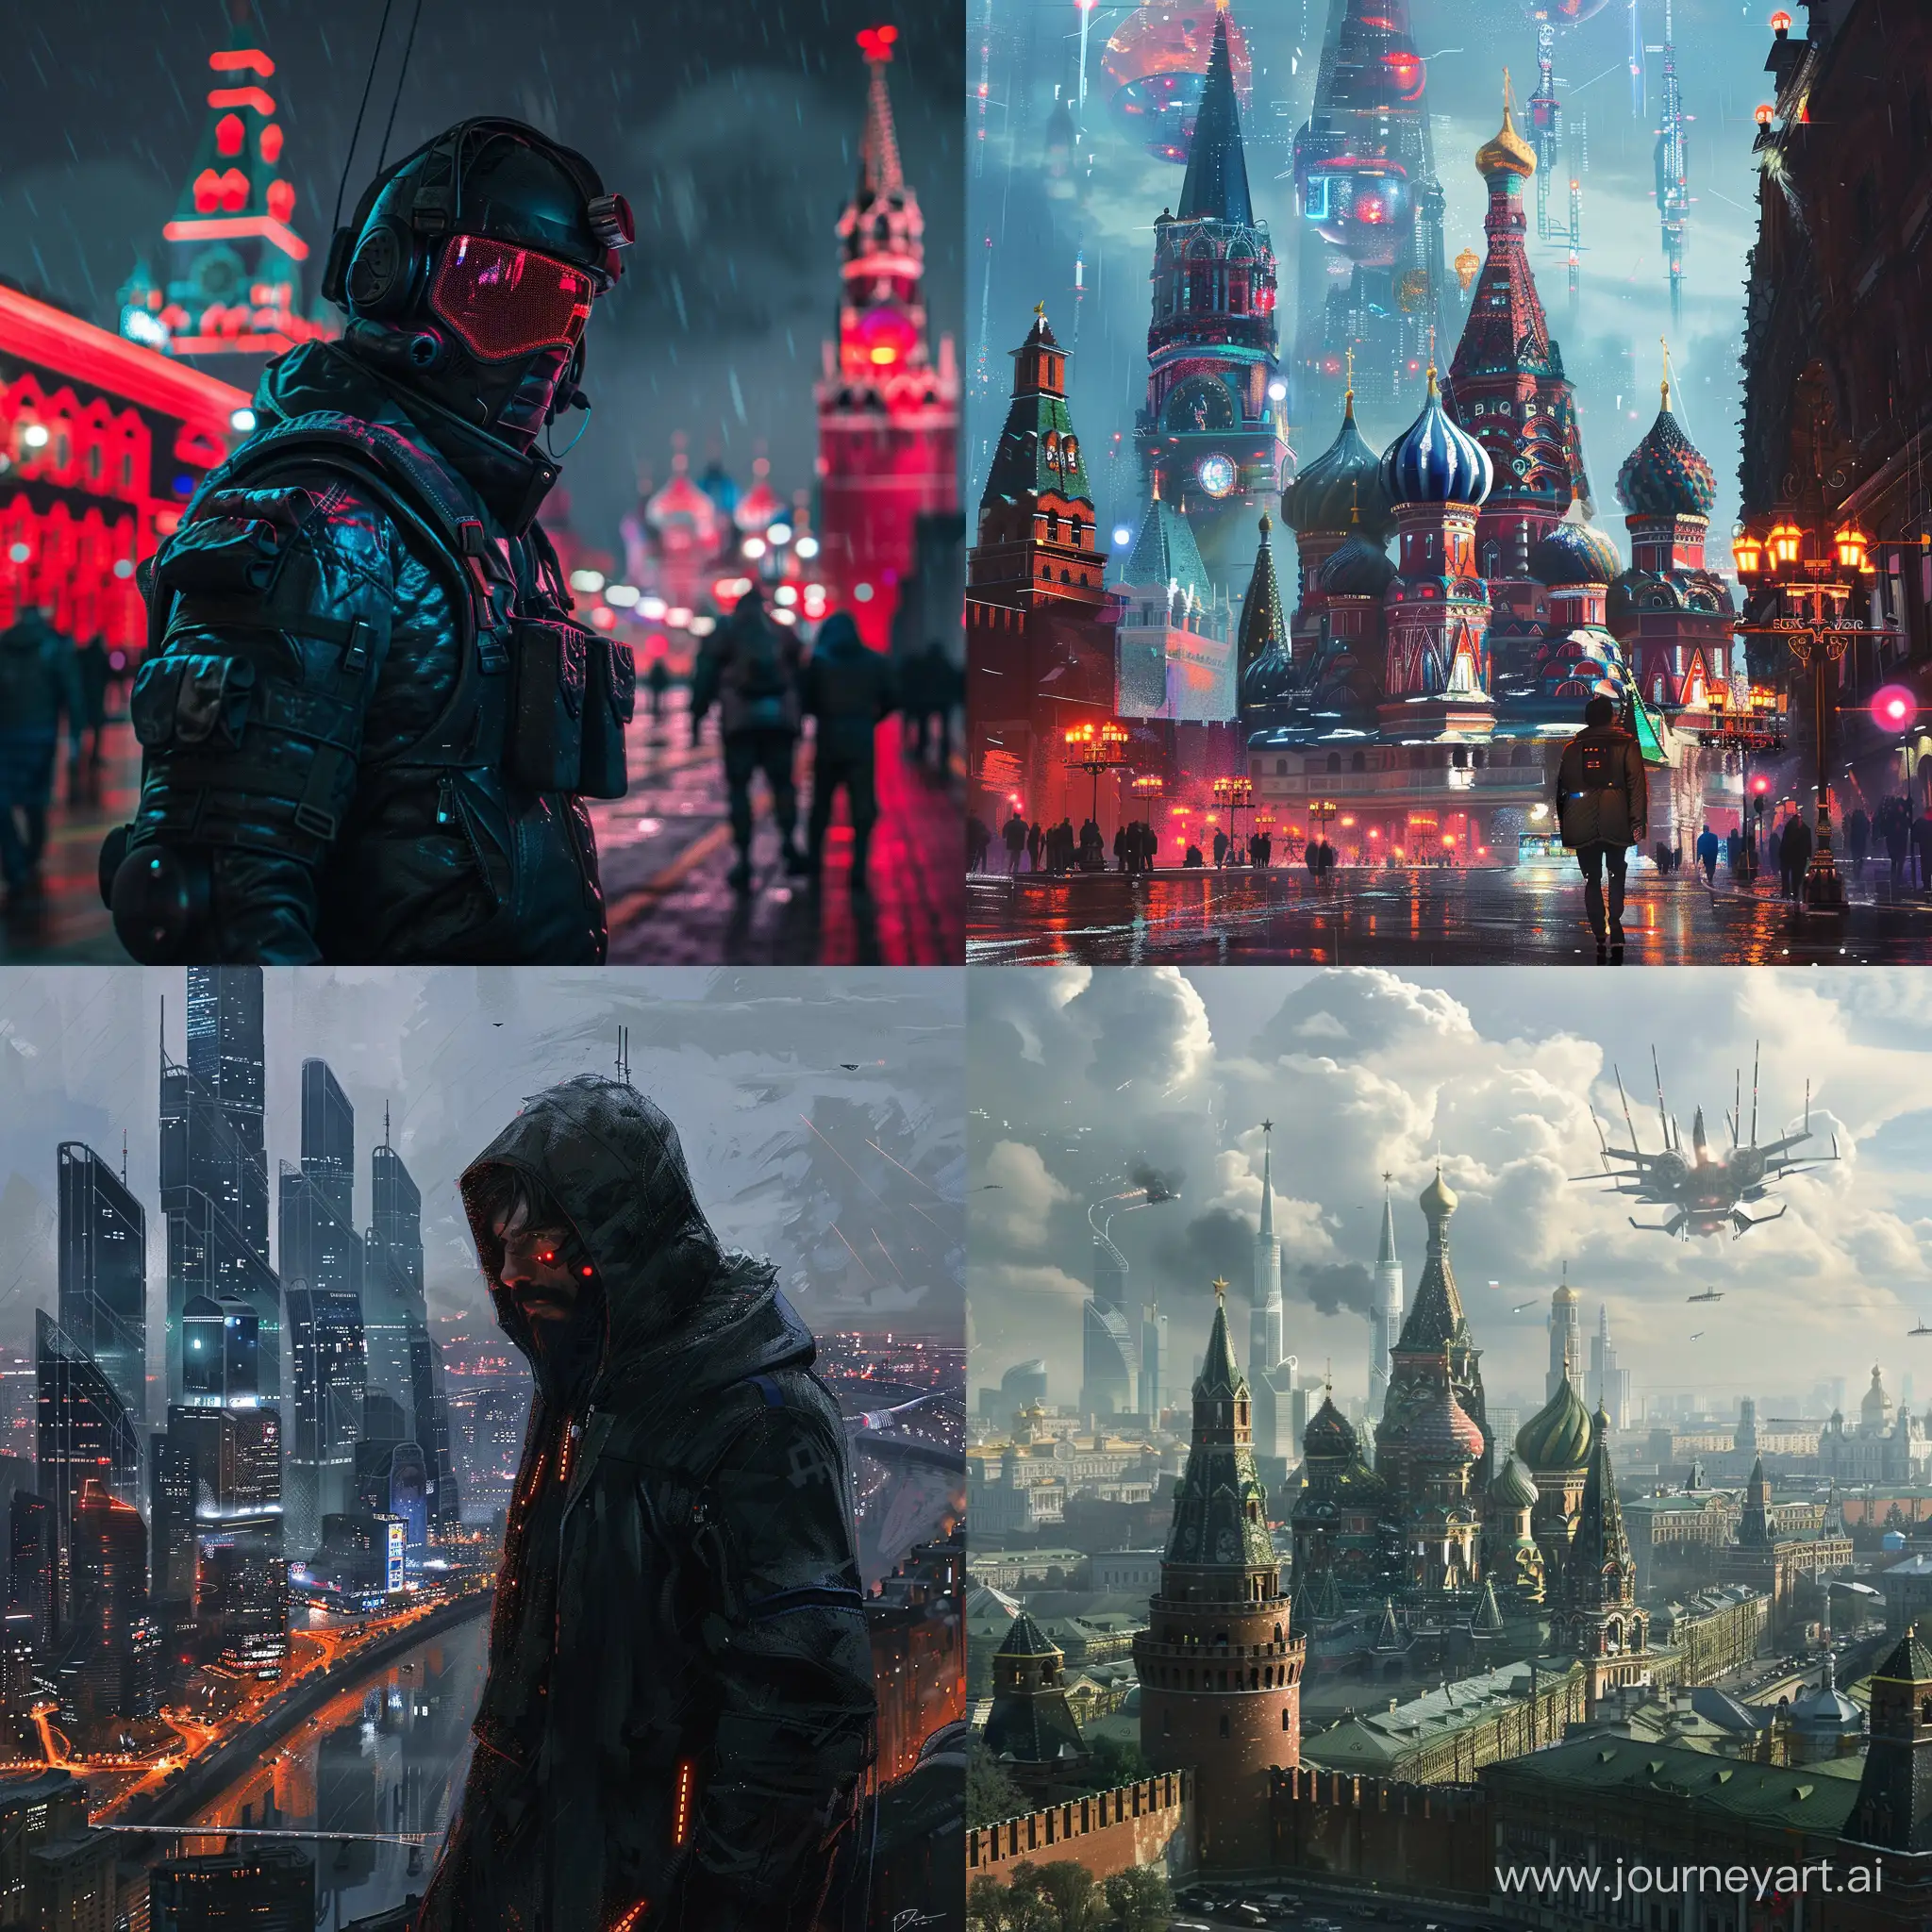 Futuristic-Cyberpunk-Vision-of-Russia